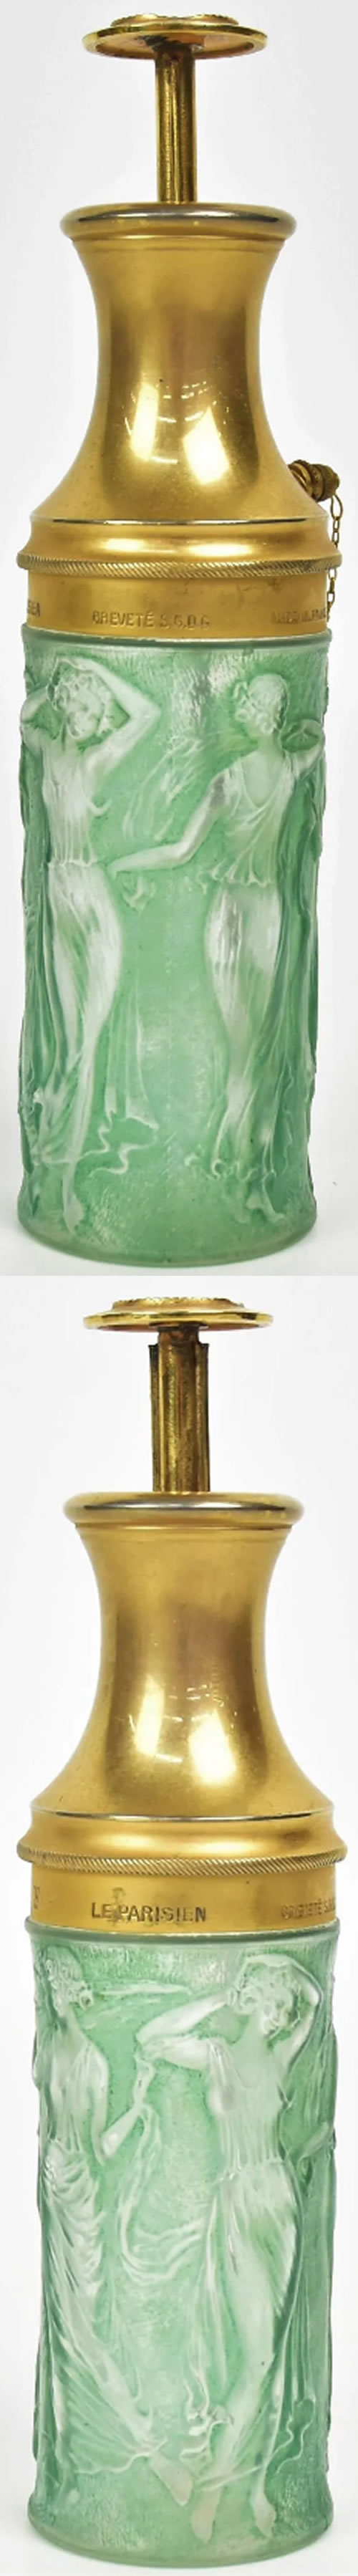 R. Lalique Figurines Atomizer 3 of 3